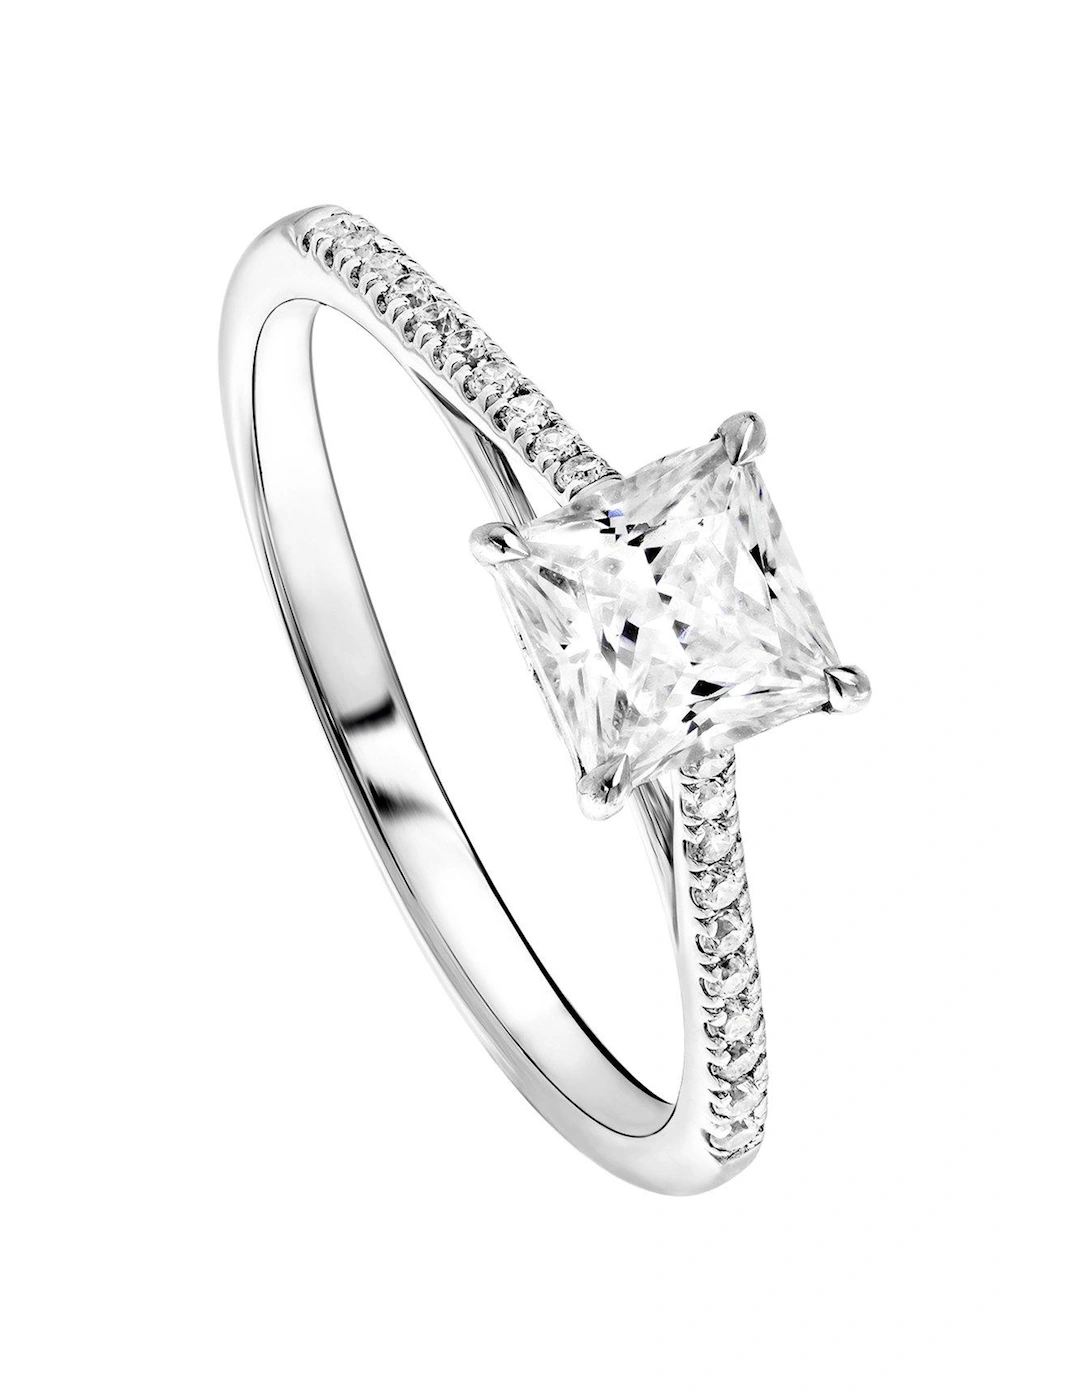 Vivian 9ct White Gold Princess Cut 0.68ct Lab Grown Diamond Ring, 2 of 1